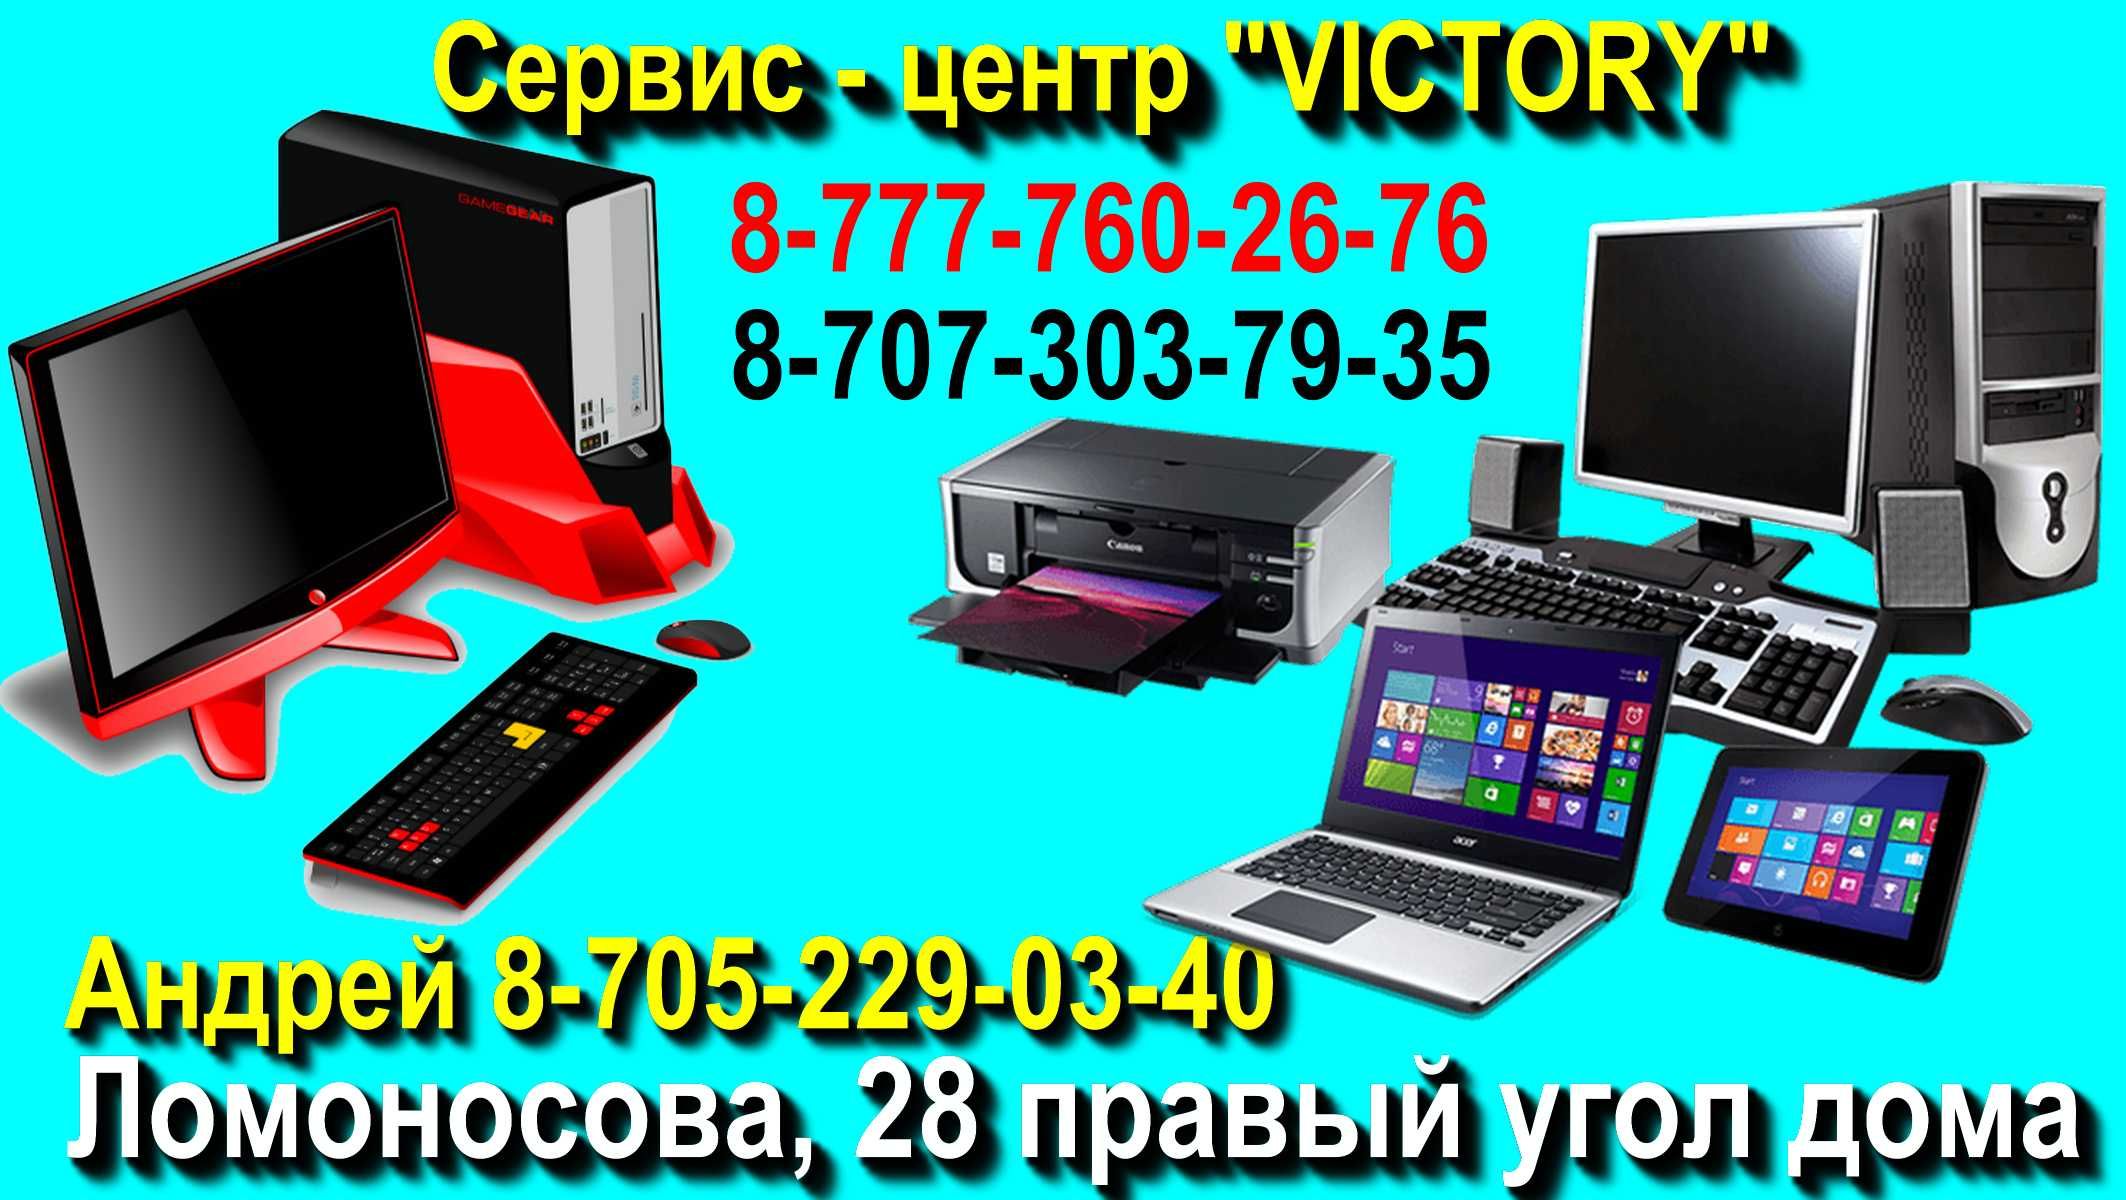 Сервис - центр VICTORY ремонт компьютеров и ноутбуков, принтеров, 1С.